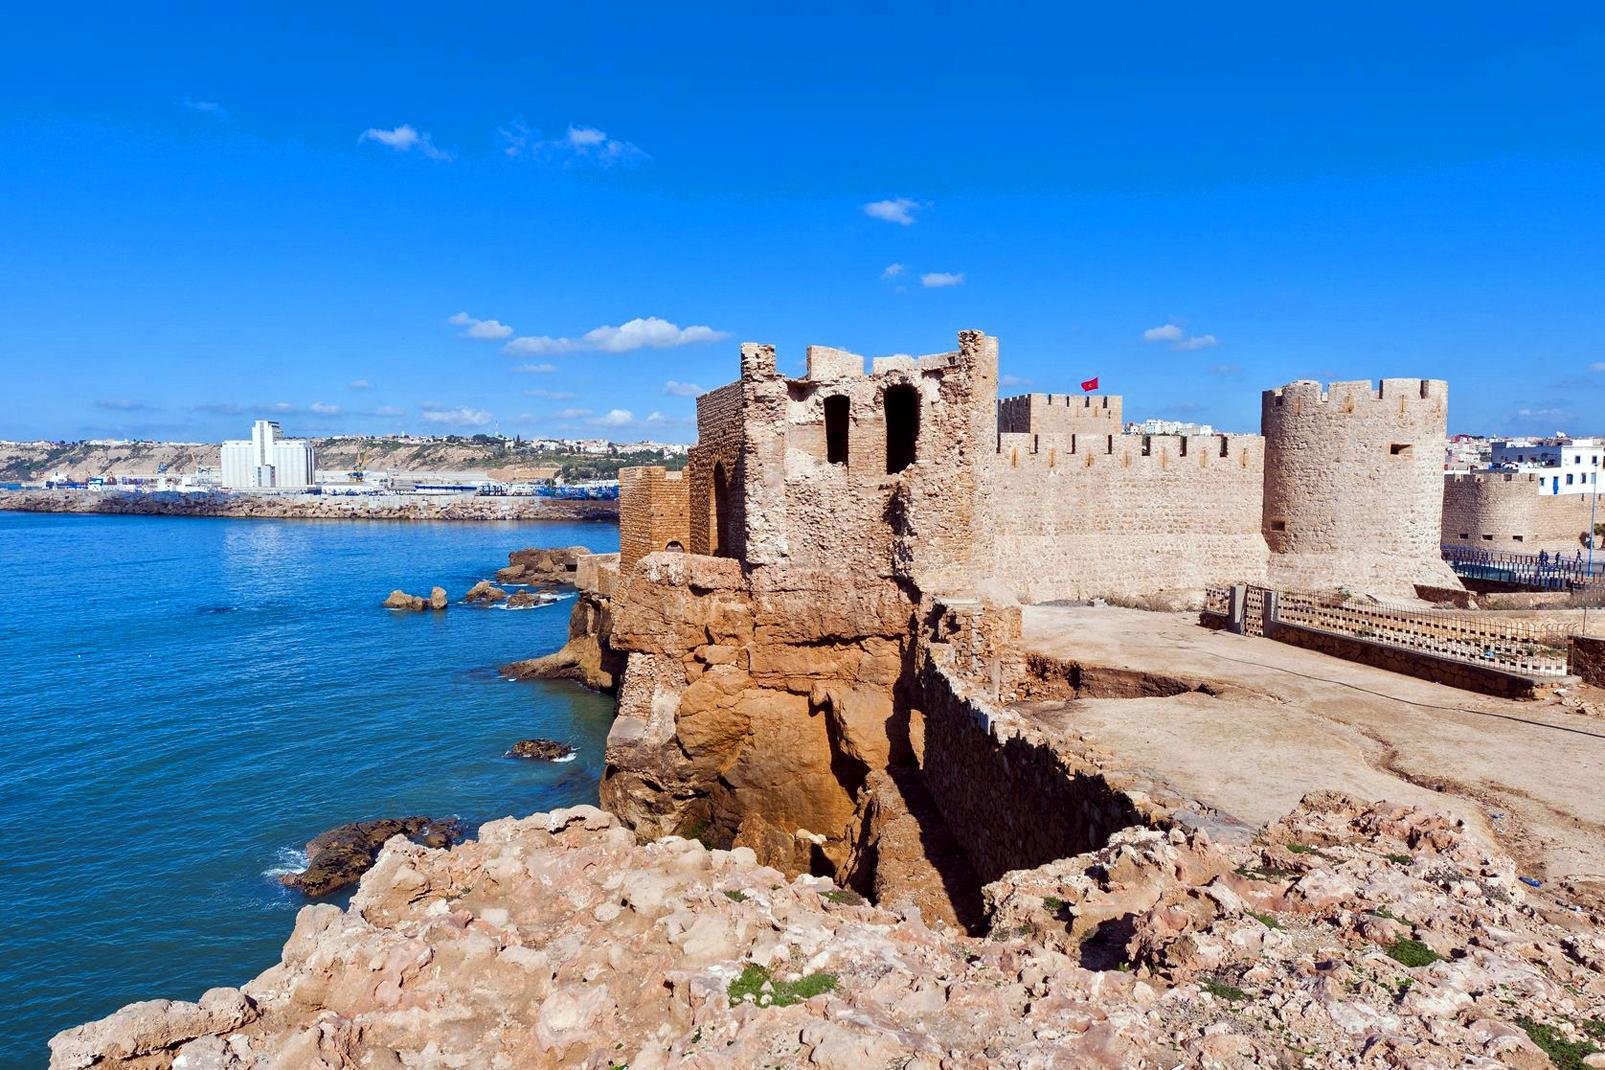 In Safi befindet sich einer der größten Sardinenhäfen der Welt. Dort kann man zudem den besten Fisch der gesamten Küste Marokkos finden. In den auf einer Anhöhe gelegene Töpferwerkstätten werden seit dem 12. Jahrhundert sehr farbenfrohe Stücke hergestellt. In der Medina sollte man unbedingt die aus dem 16. Jahrhundert stammende portugiesische Kapelle besichtigen. Wenn Sie vom Norden aus nach Safi anreisen ...